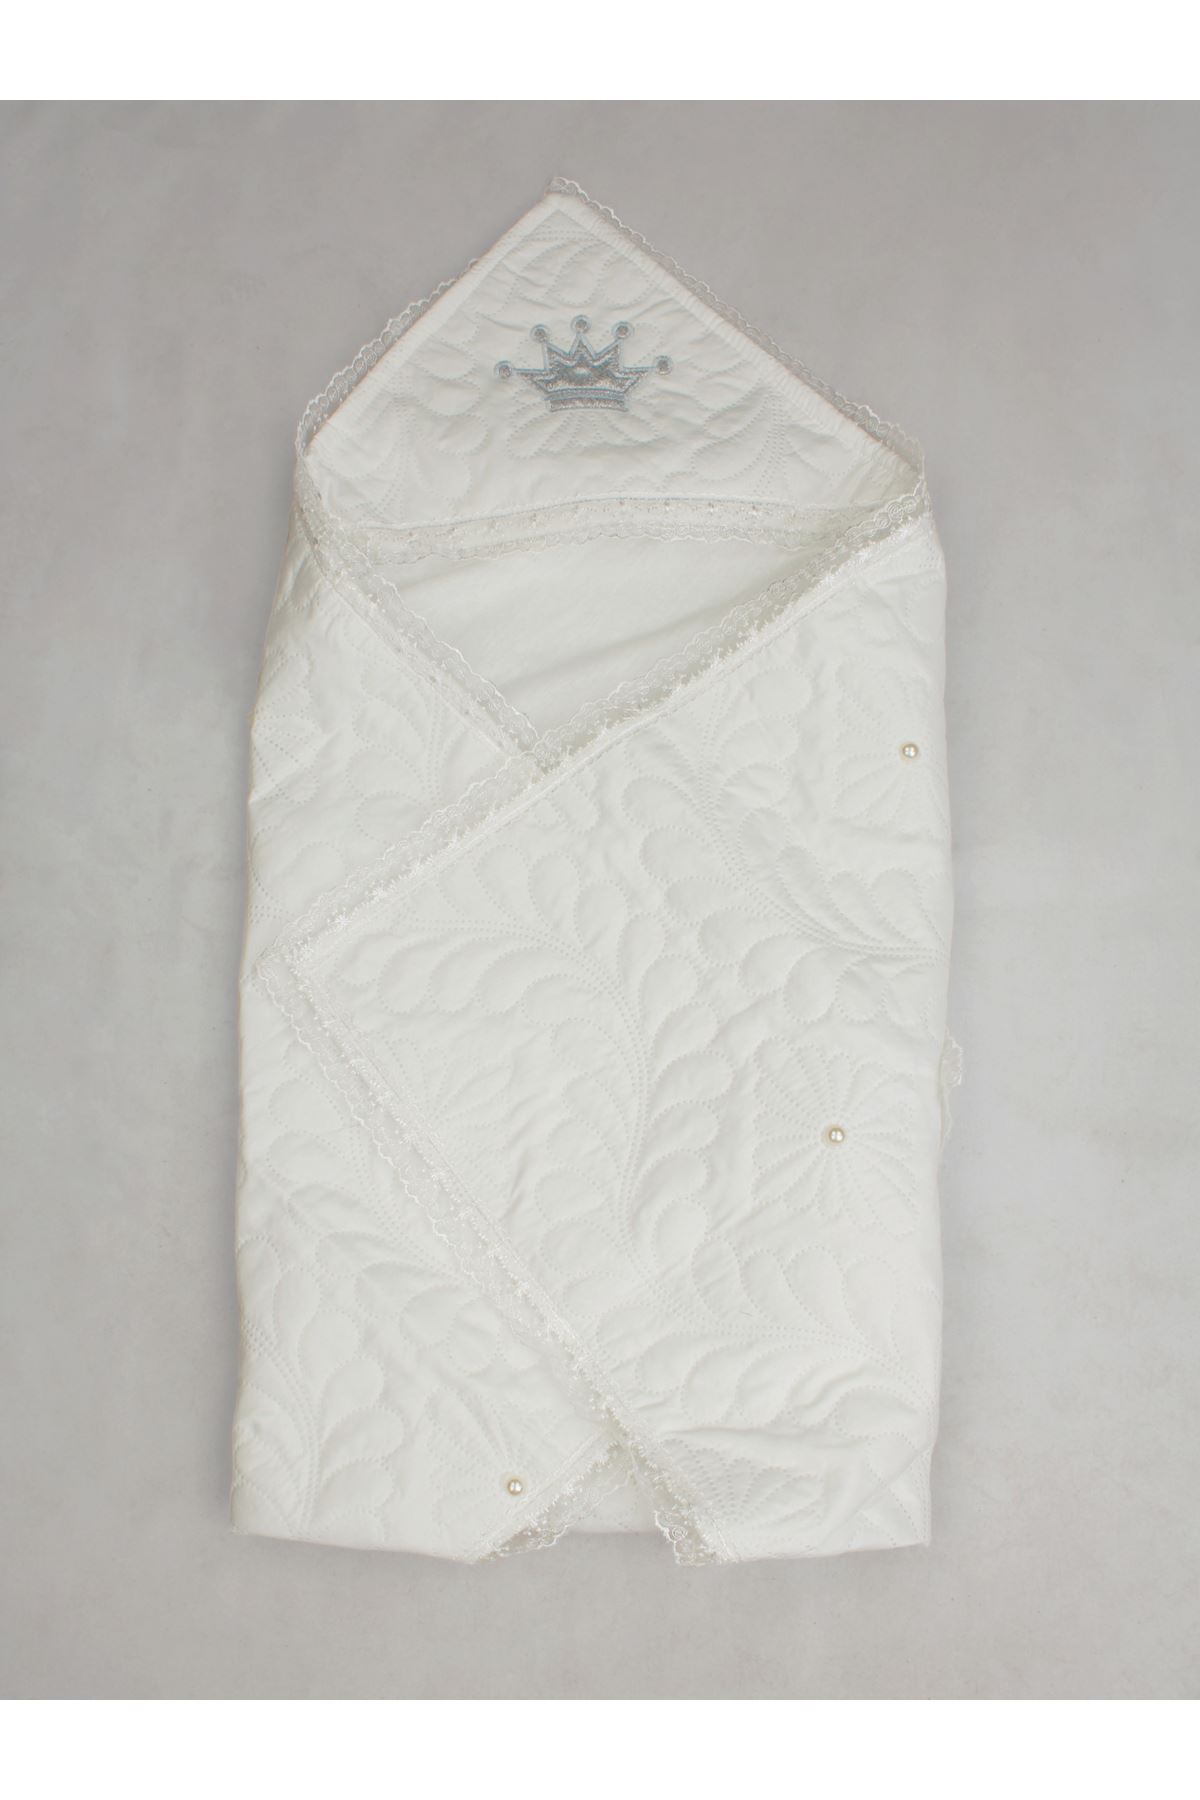 Beyaz 85x85 cm Kral Kraliçe Bebek Kundak Battaniye